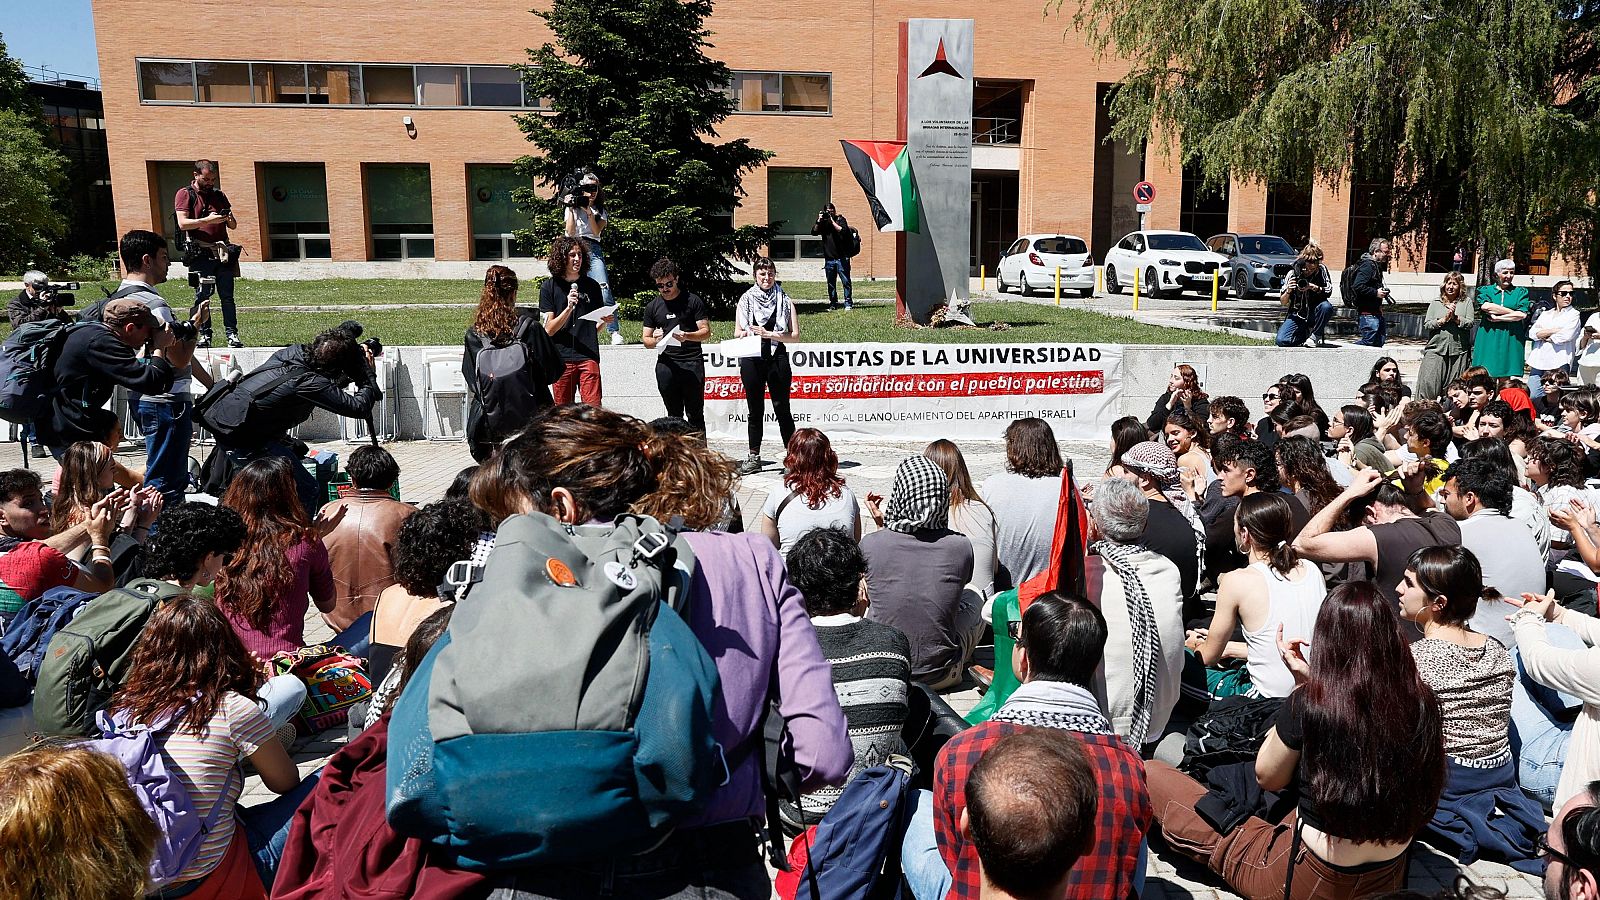 Se multiplican las protestas en universidades a favor de palestina